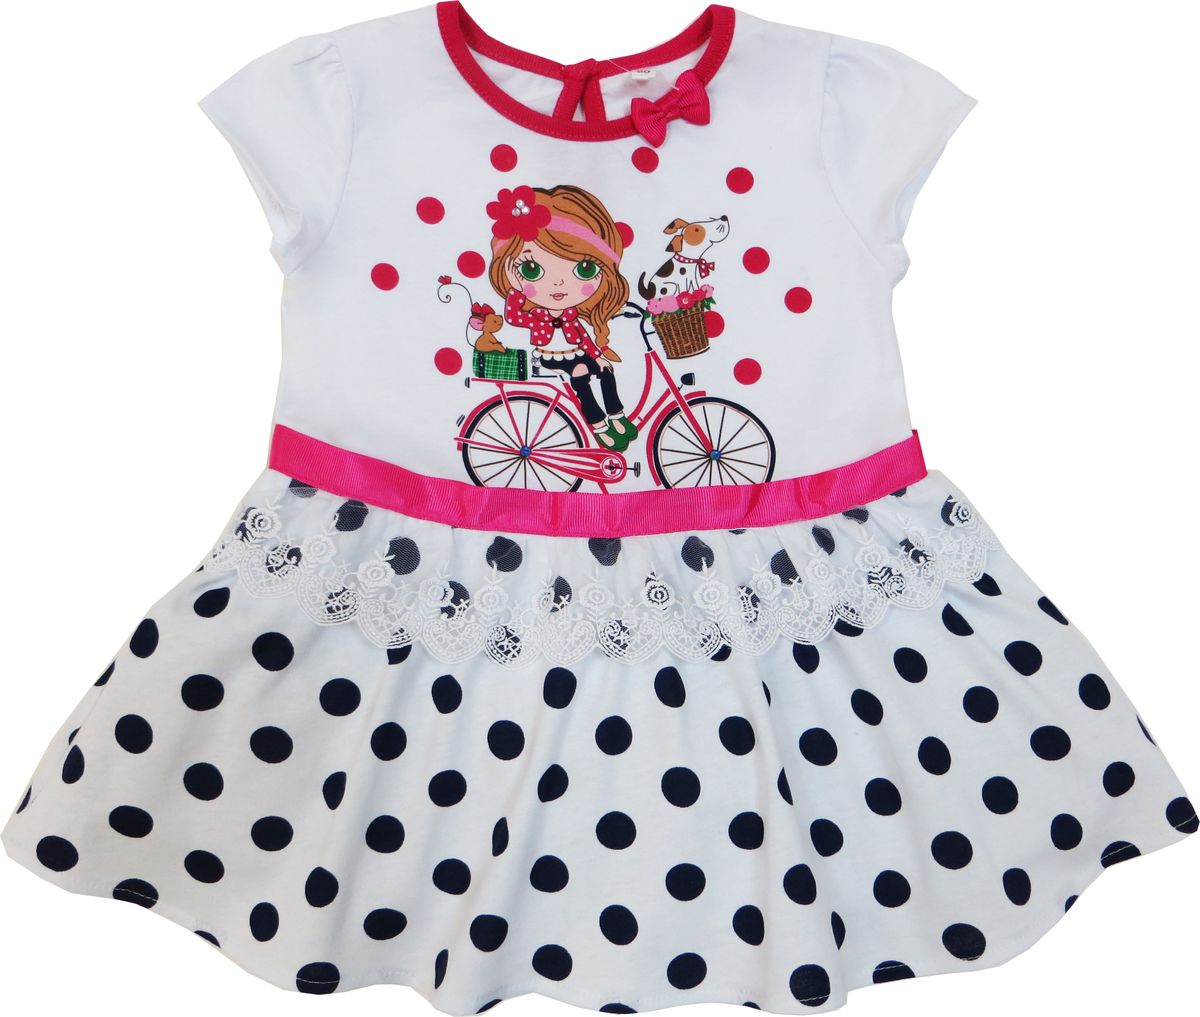 Платье Soni Kids Каникулы Мари, цвет: белый, красный. Л7105001-86к. Размер 86